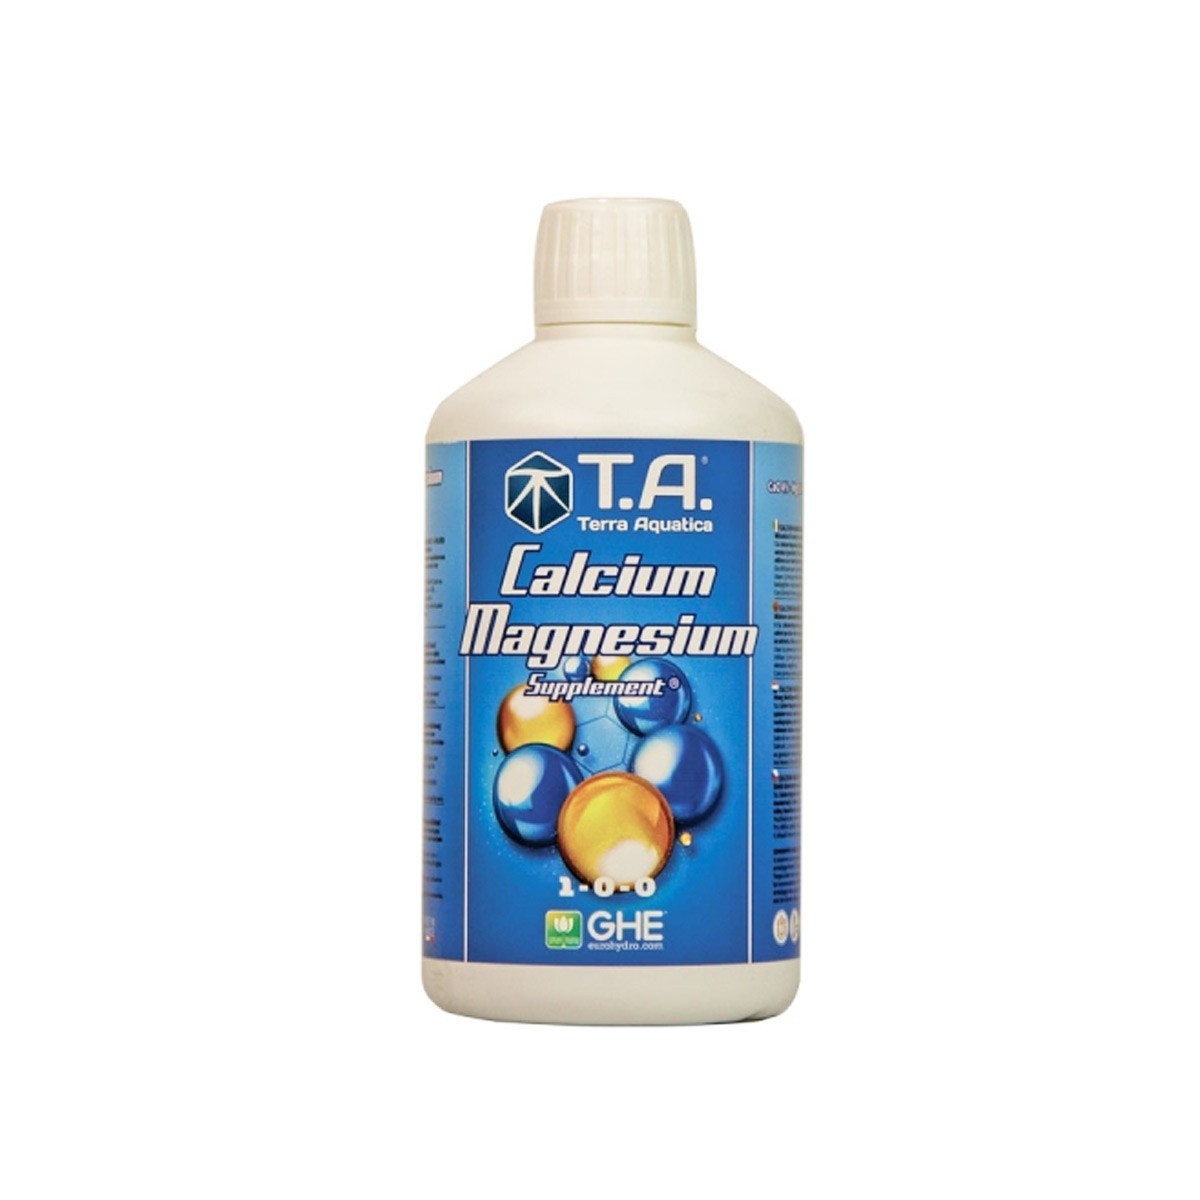 Magnésium et Calcium supplément - 0,50l - GHE - Terra Aquatica